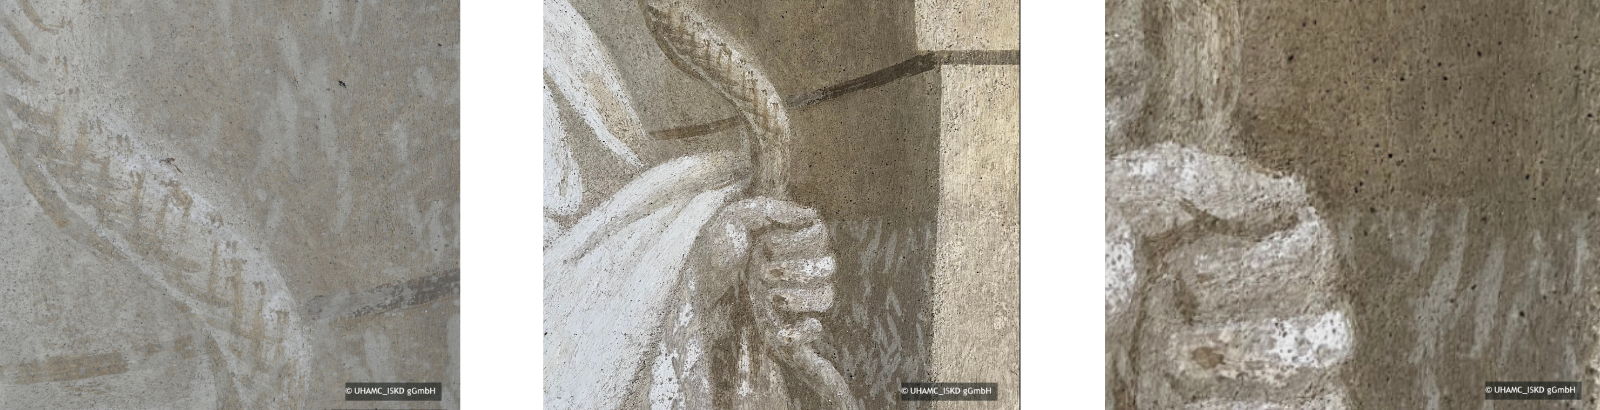 Details aus der Darstellung der Prudentia im Vorzustand und mit einem Musterfeld zur Behandlung der biogenen Besiedlung. Im Vergleichbild wird eine deutliche optische Beruhigung der Wandmalereioberflächen in der Schloßkapelle gezeigt.